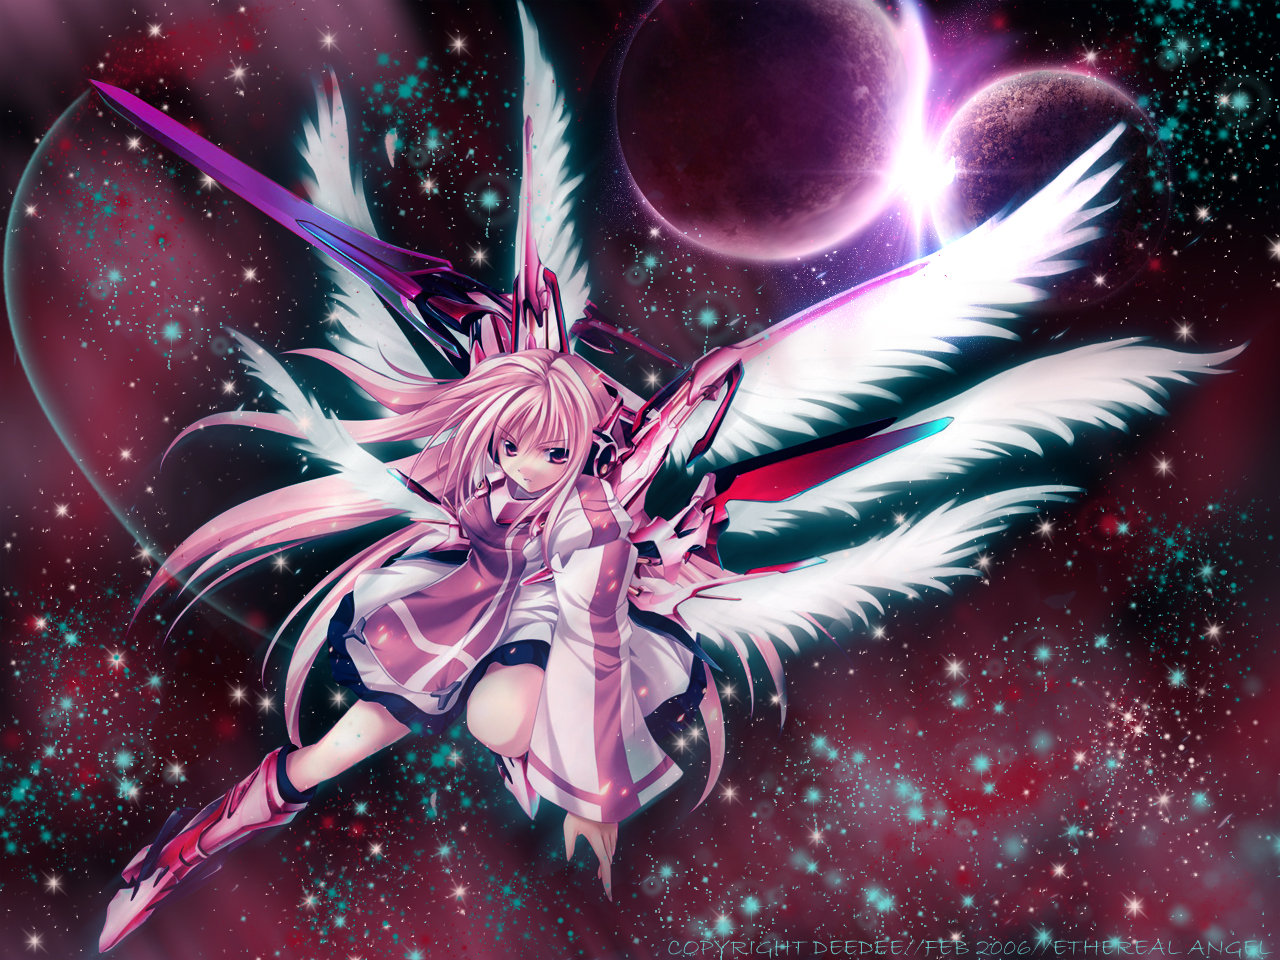 anime angel wallpaper,cg artwork,anime,diseño gráfico,personaje de ficción,gráficos